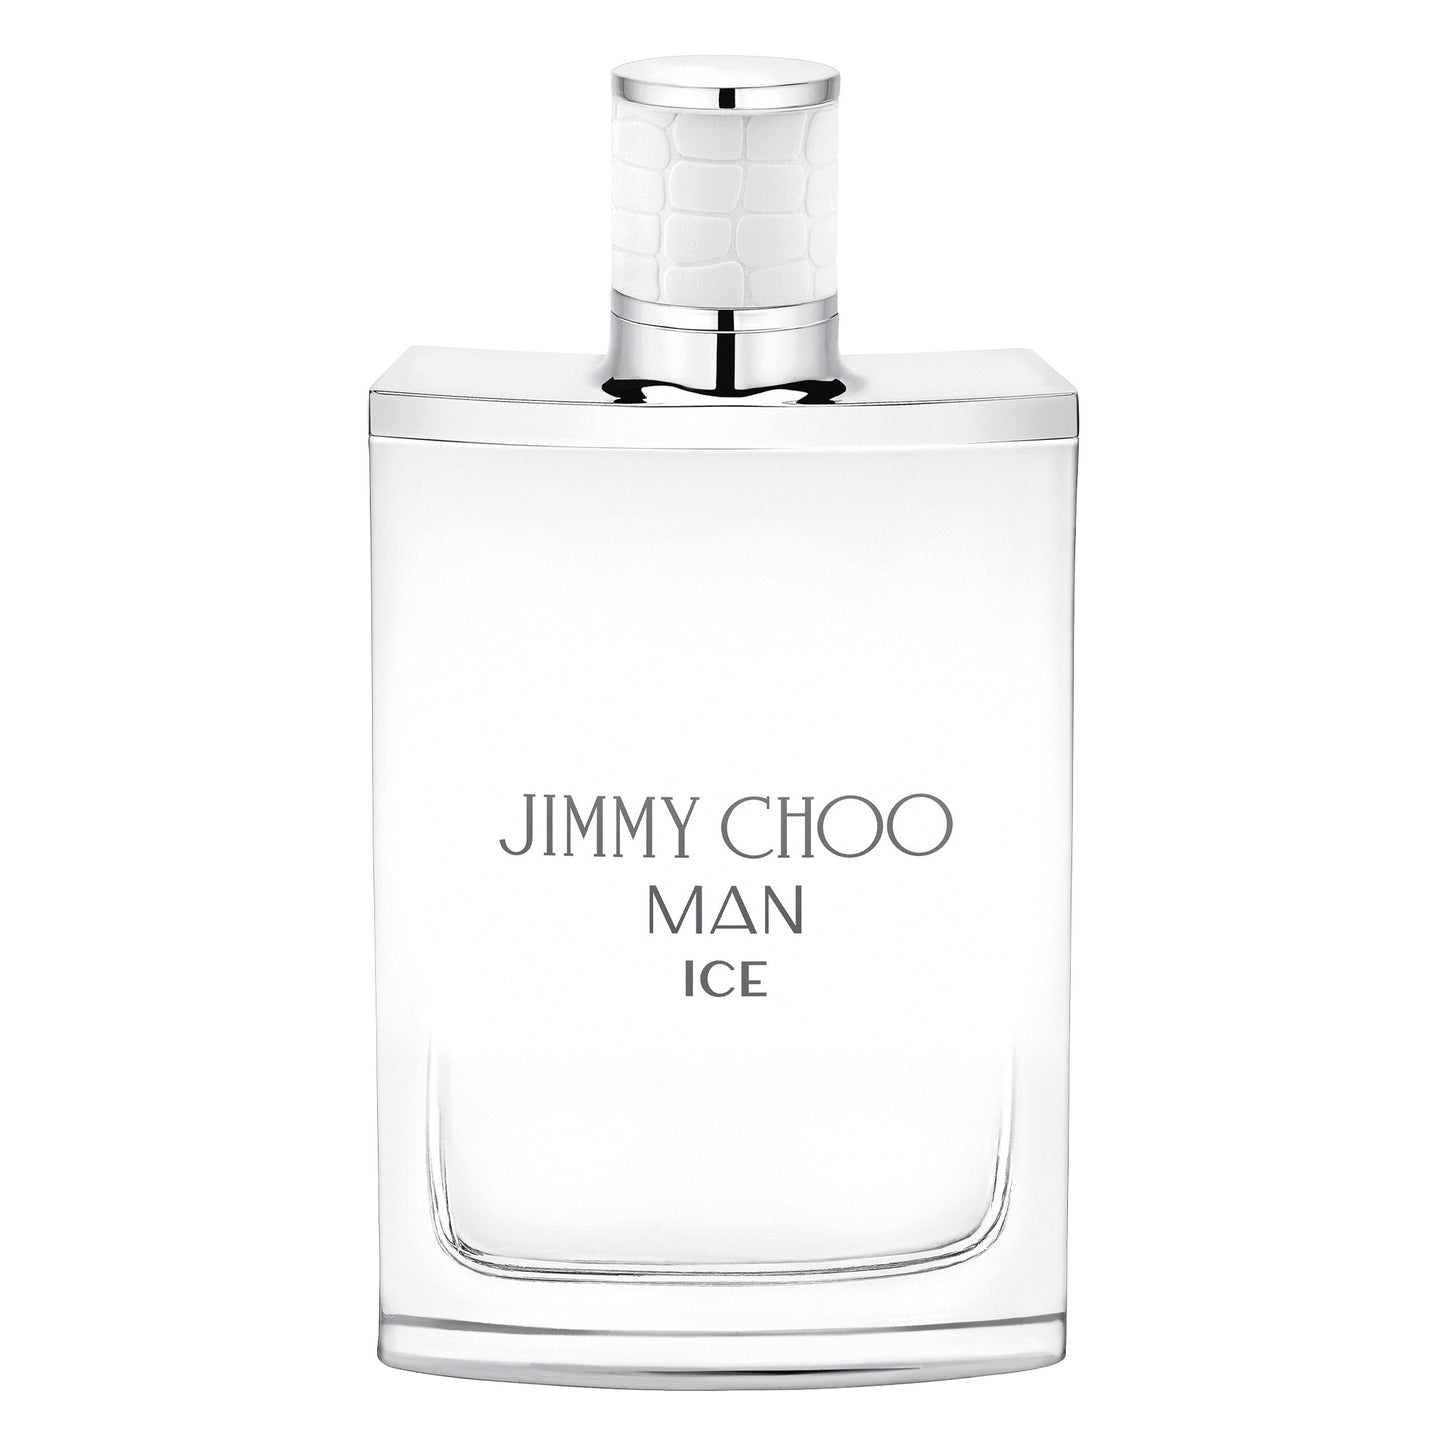 Jimmy Choo Man Ice Eau de Toilette. 3.4Oz/100ml